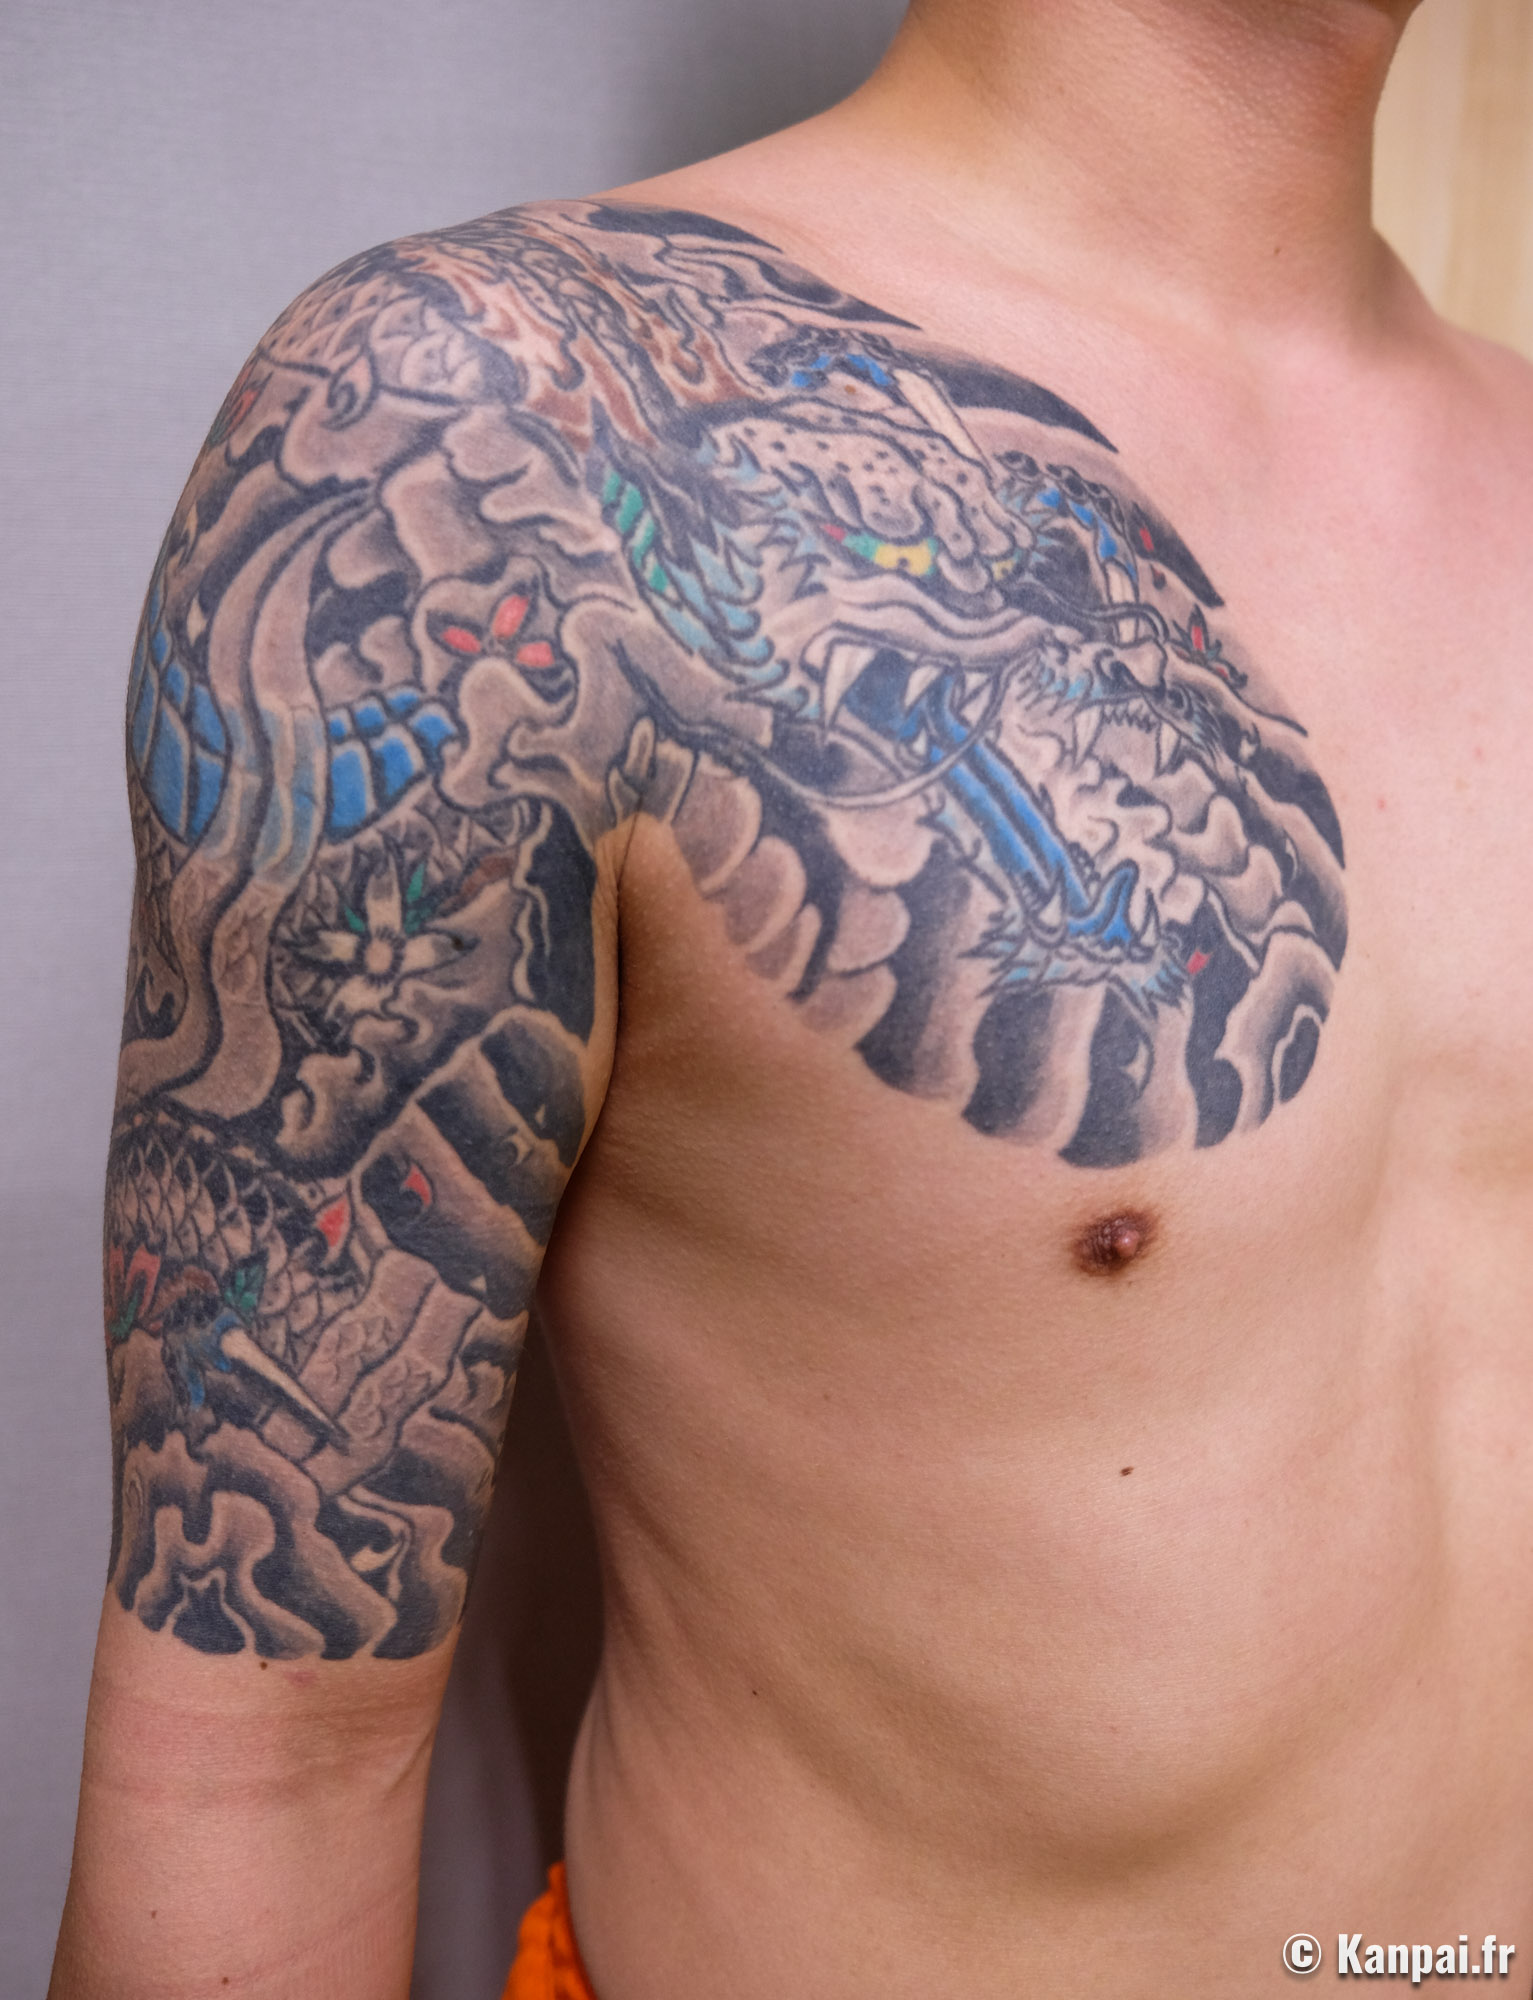 Fond Homme Musclé Avec Un Tatouage De Bras Posant Dans La Salle De